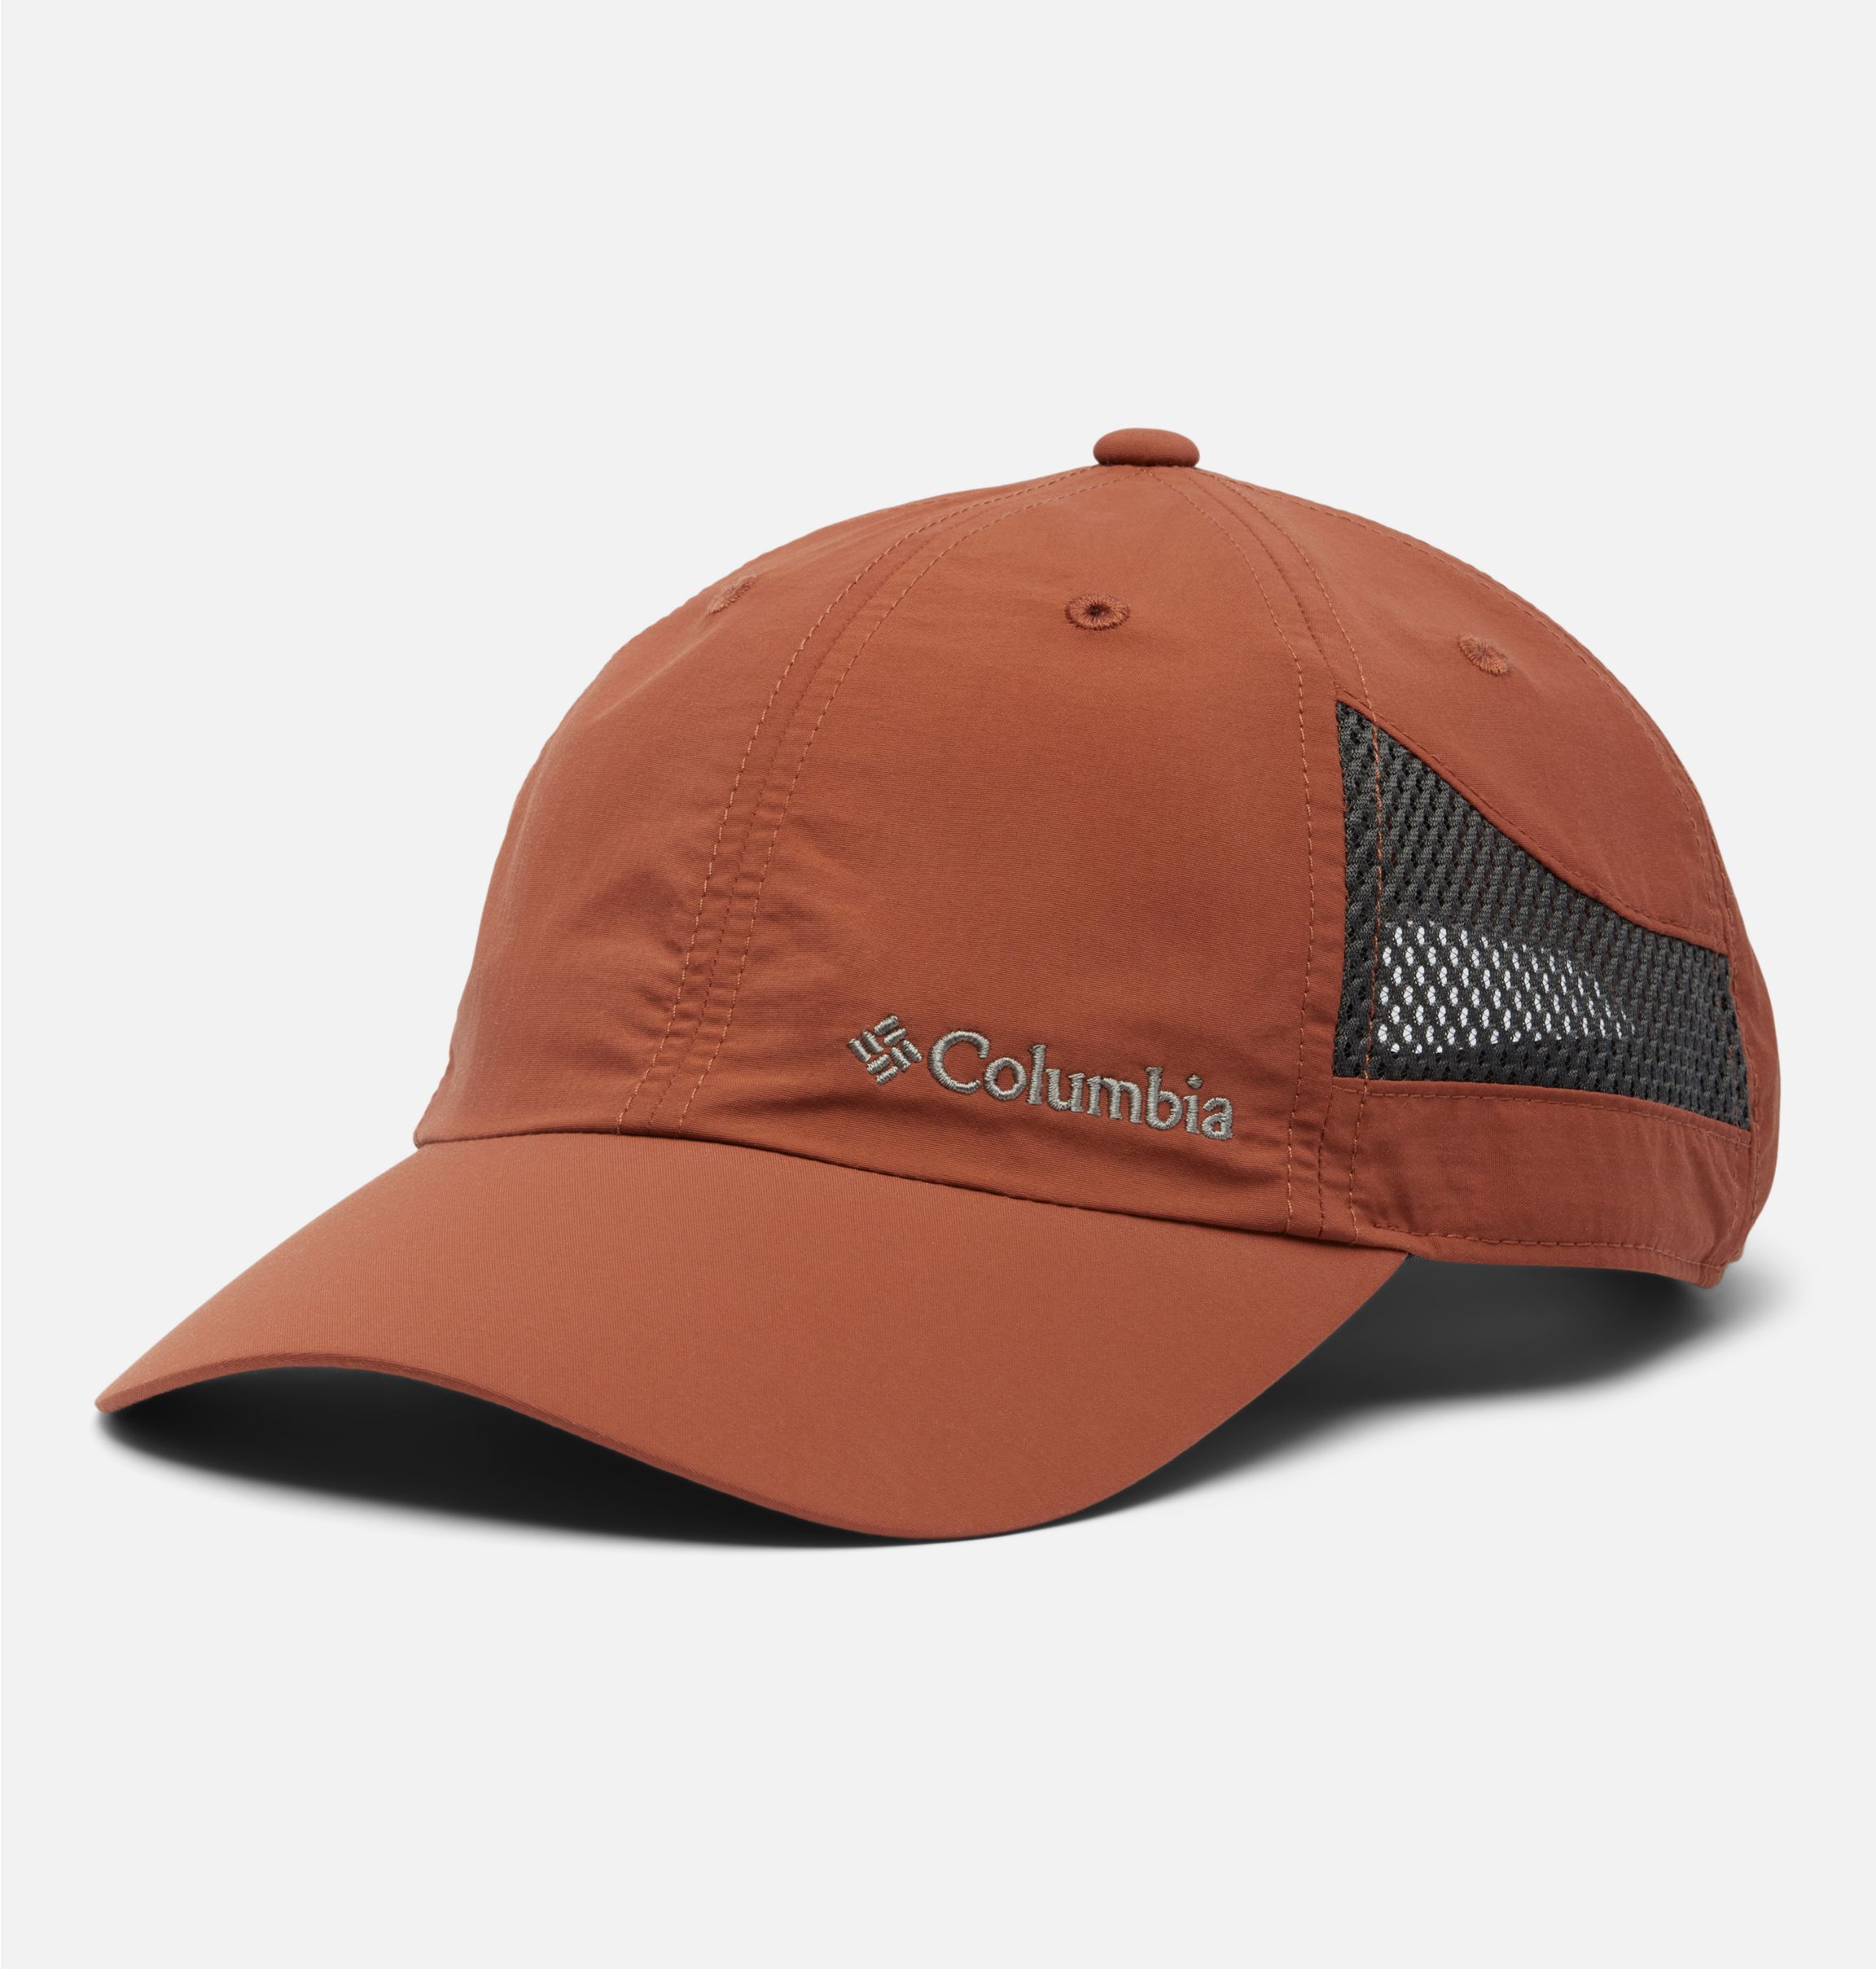 Columbia Tech Shade Hat Black at